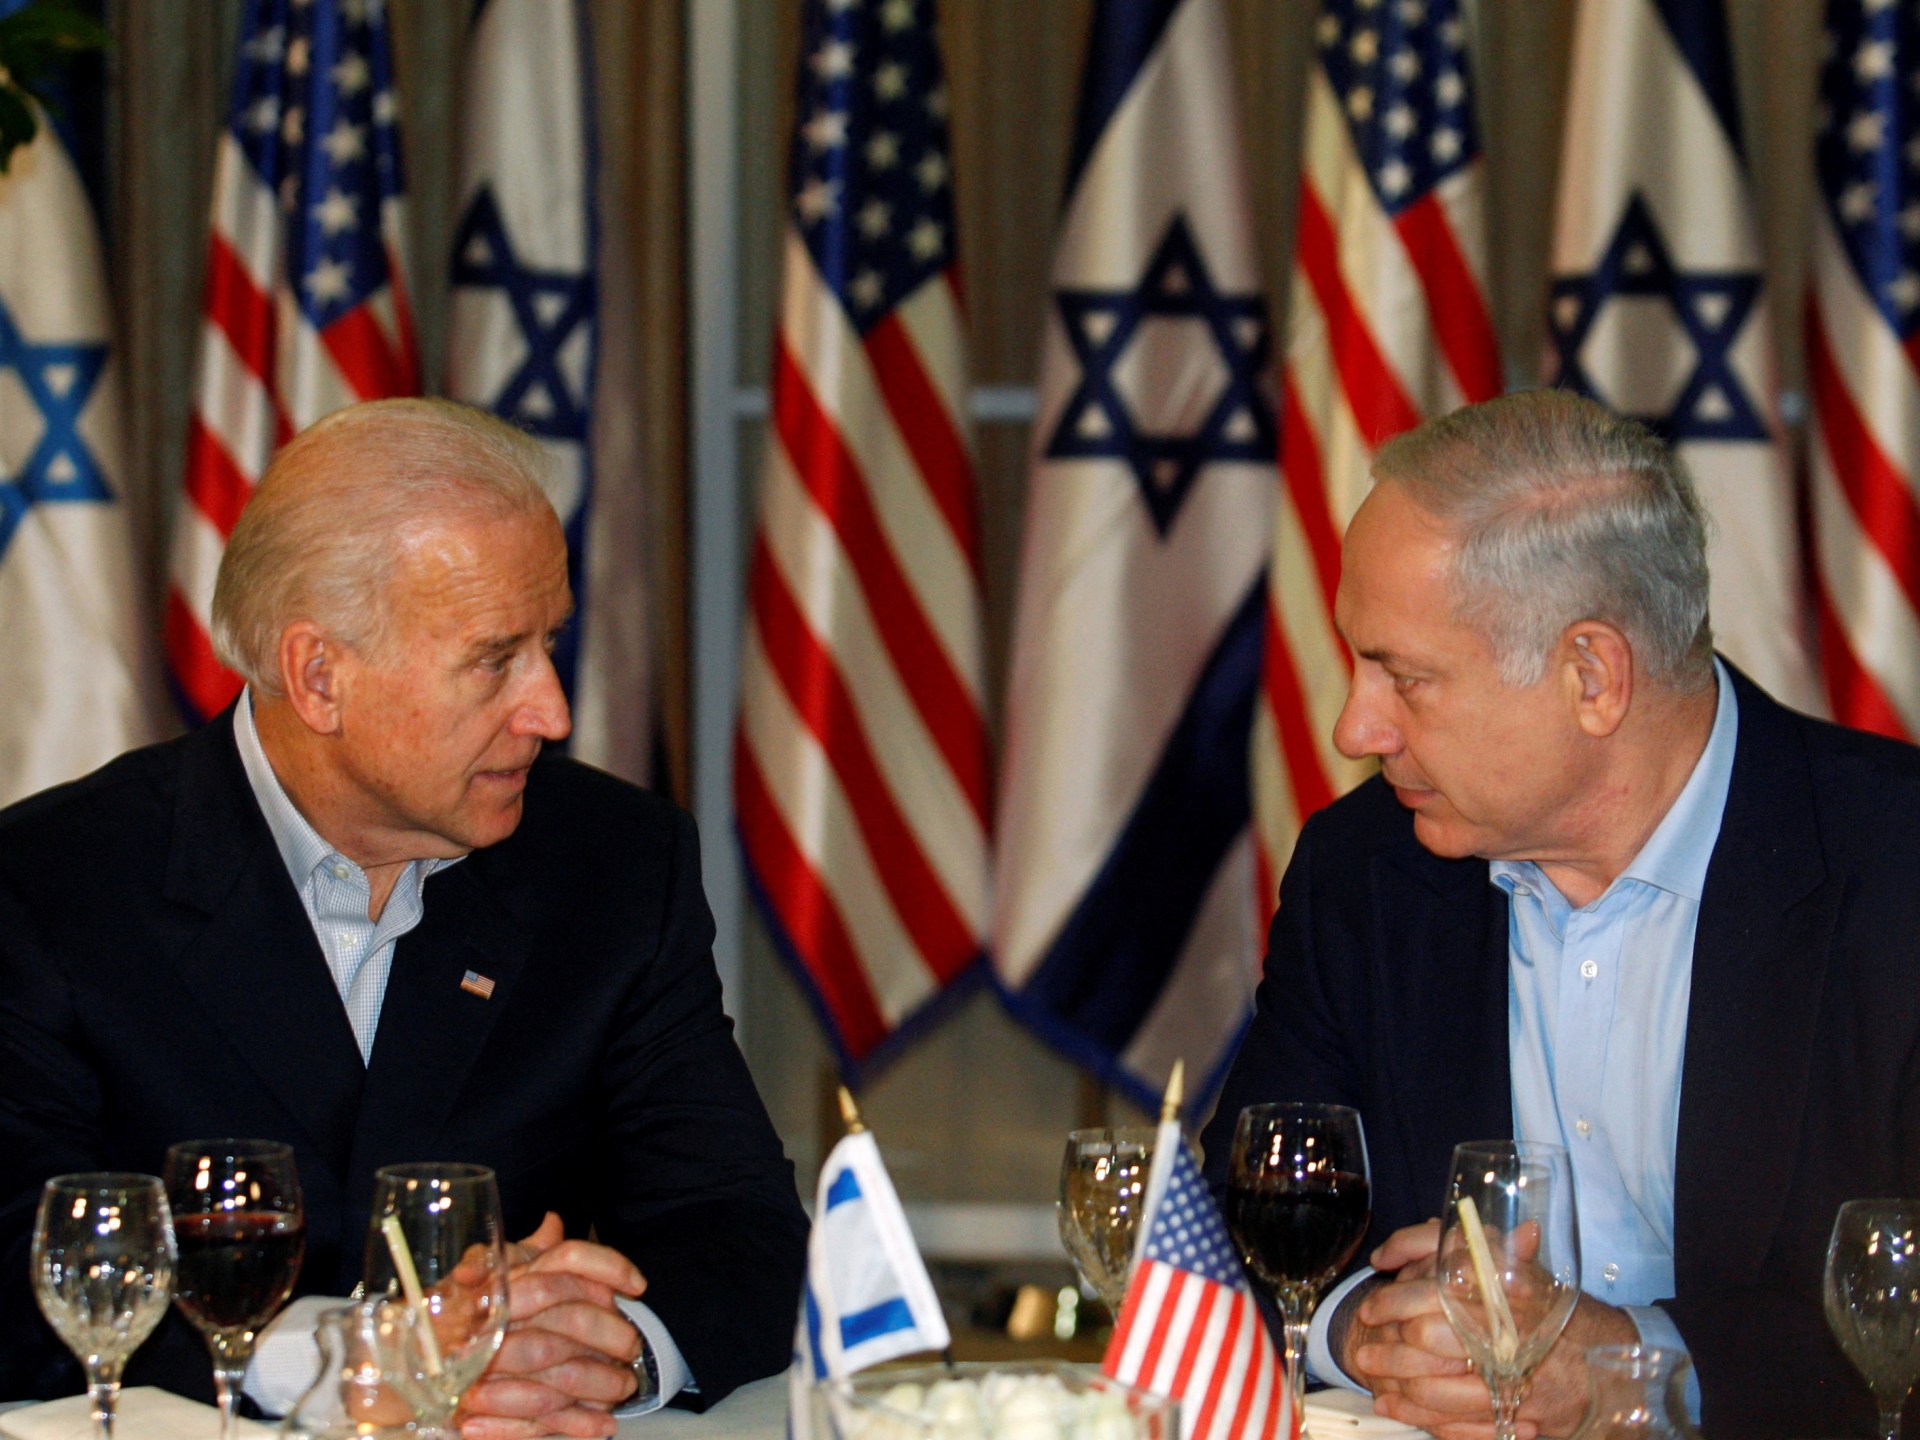 فورين بوليسي: إسرائيل عبء إستراتيجي على الولايات المتحدة | سياسة – البوكس نيوز